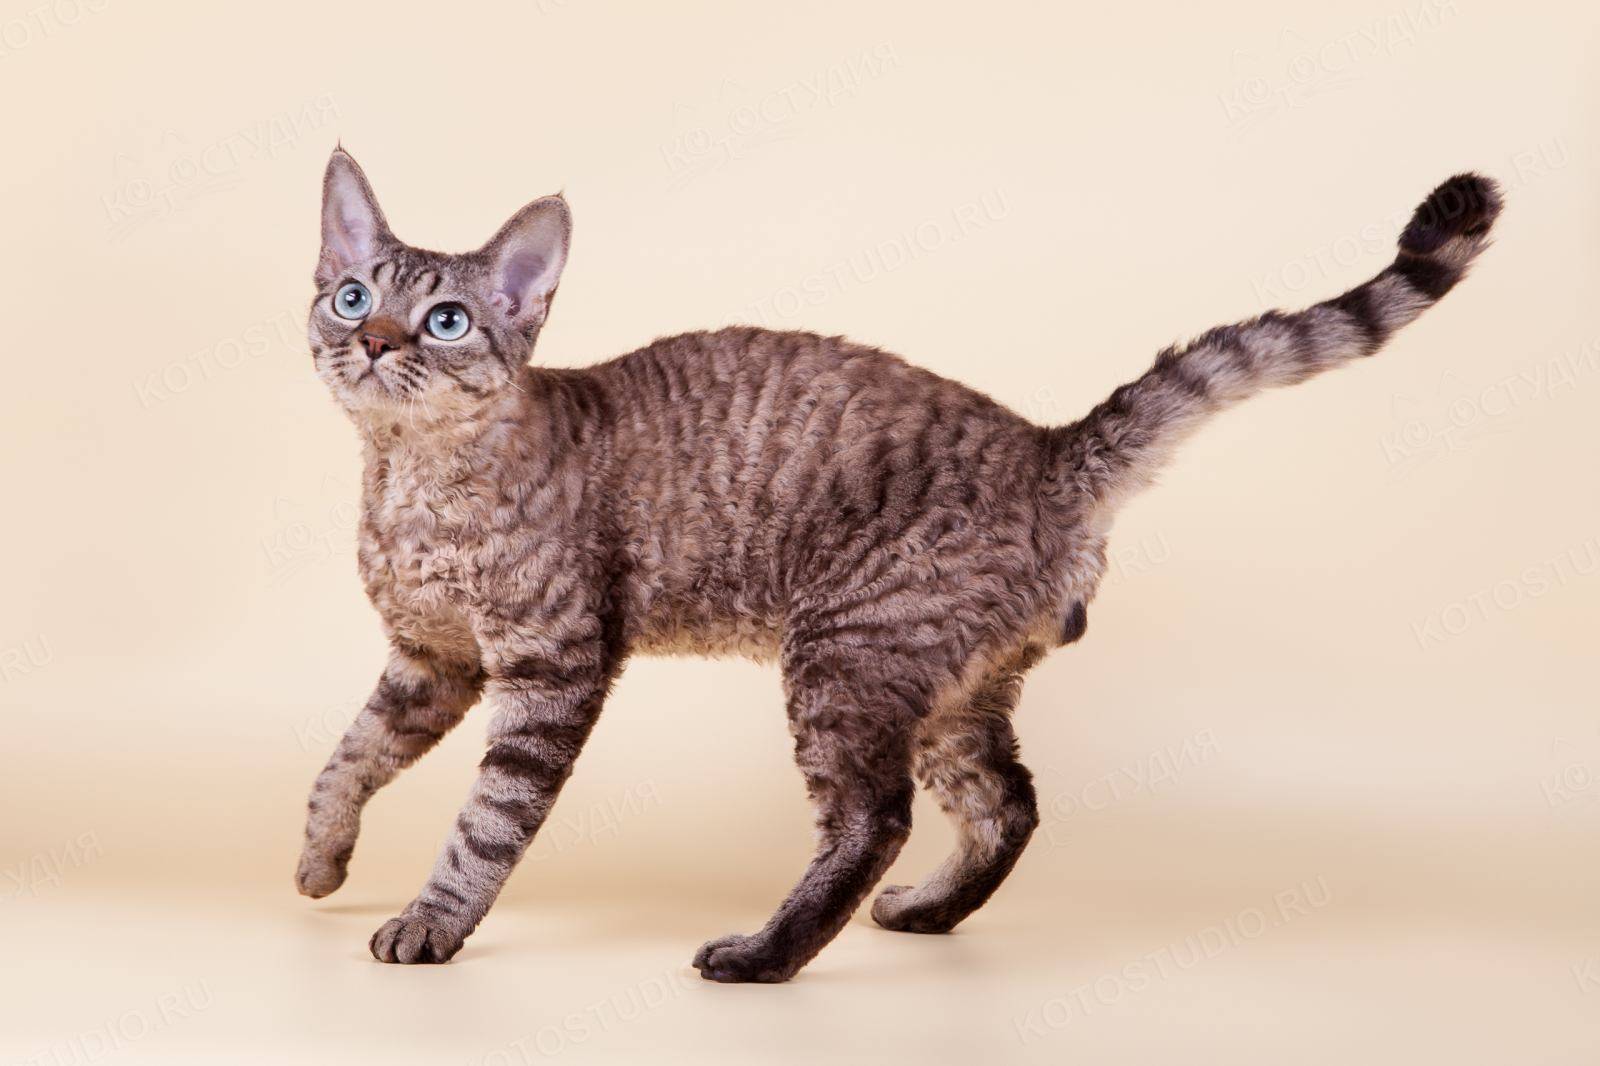 Гипоаллергенные породы кошек: виды, фото, выбор питомца и правила содержания, отзывы владельцев